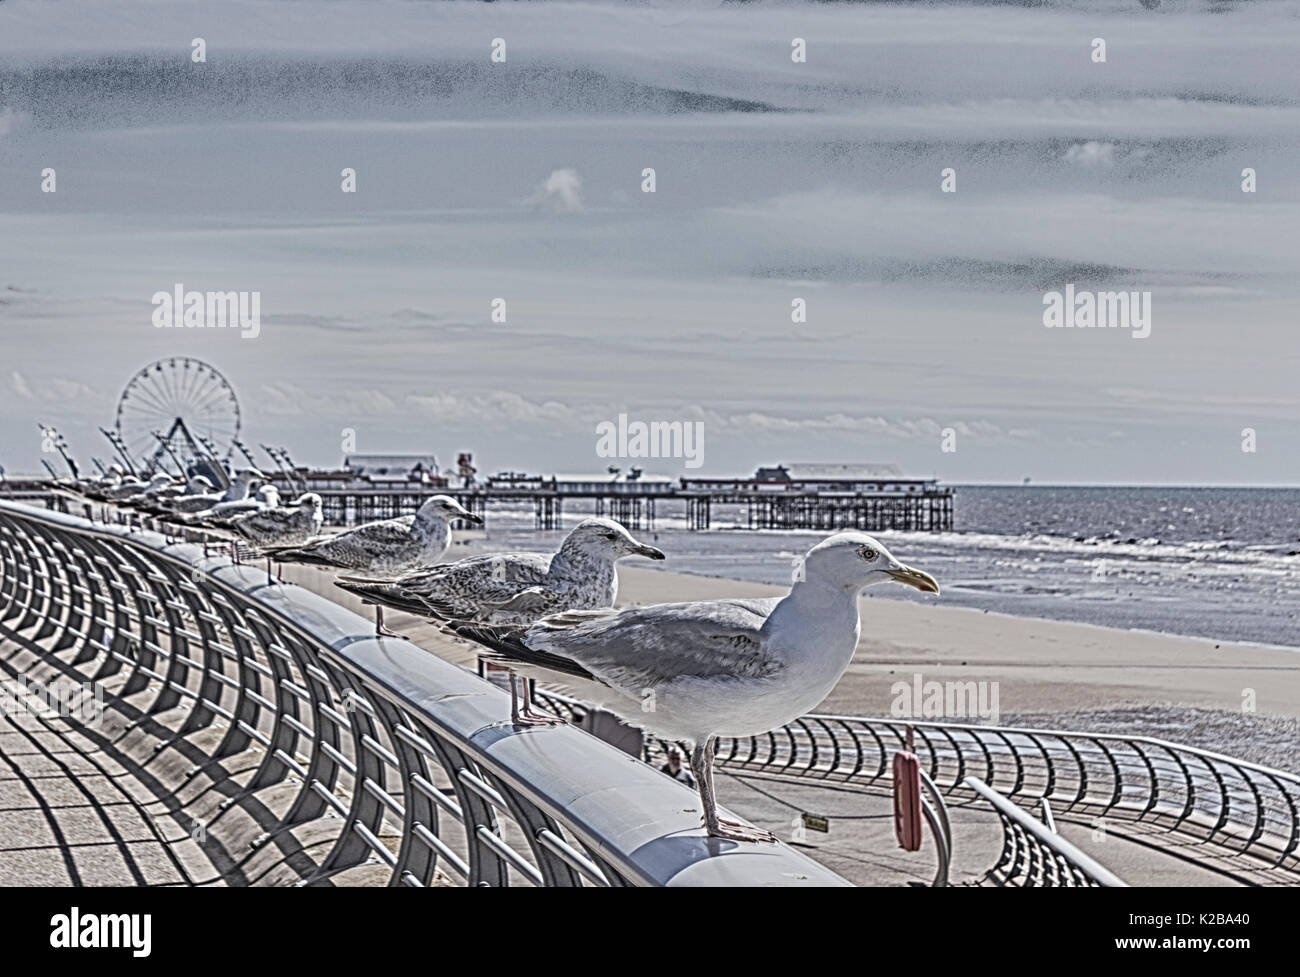 Blackpool, Fylde Coast, Lancashire, Angleterre. Rangée de mouettes perchées sur une balustrade surplombant la mer. Banque D'Images